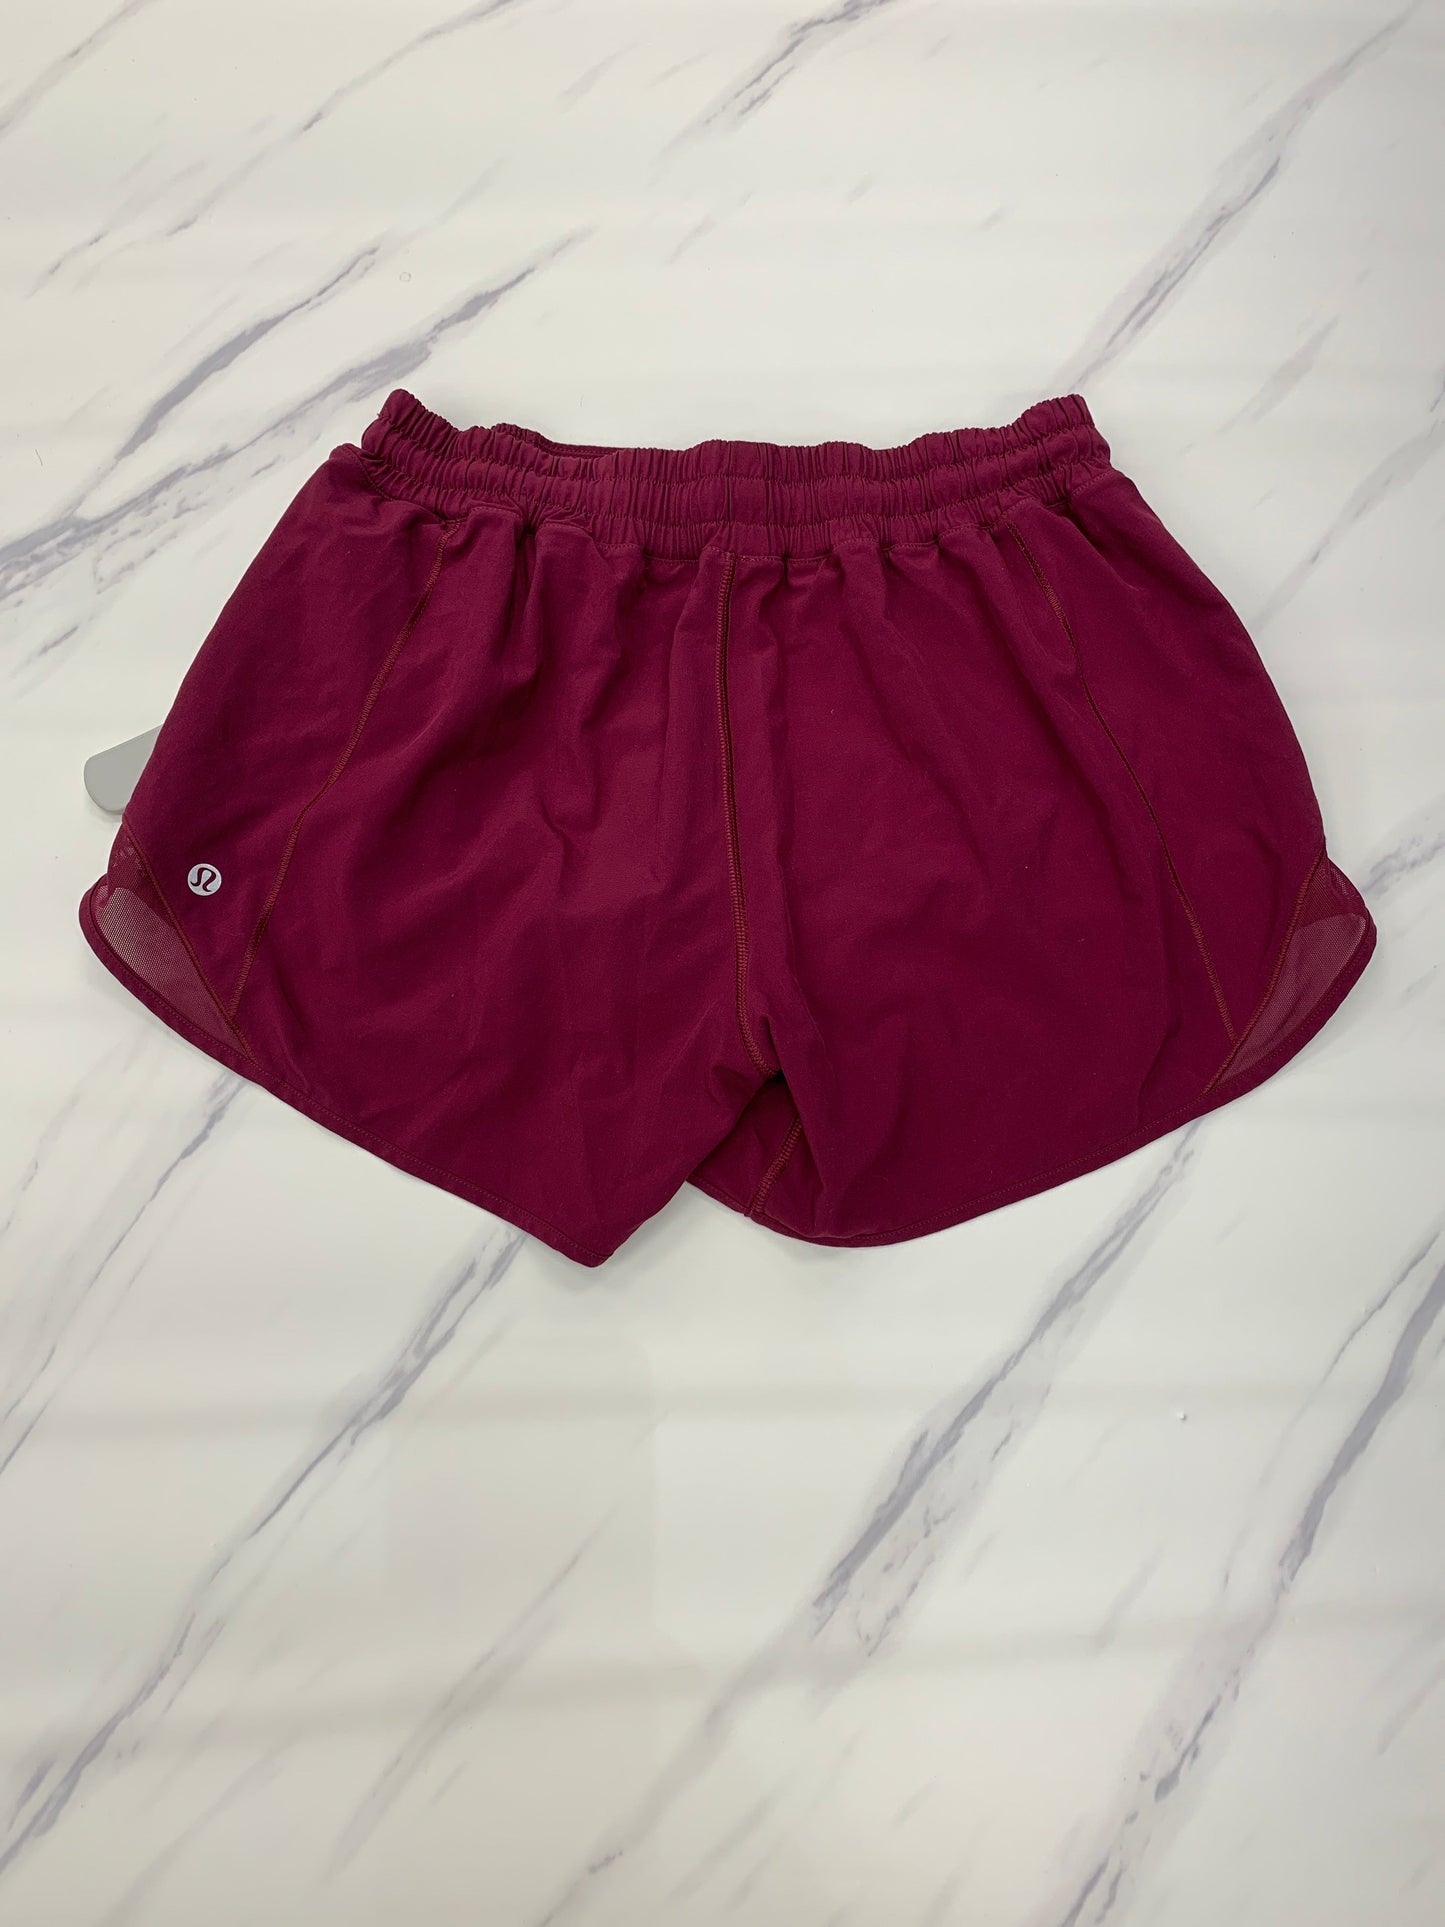 Athletic Shorts Lululemon, Size 8